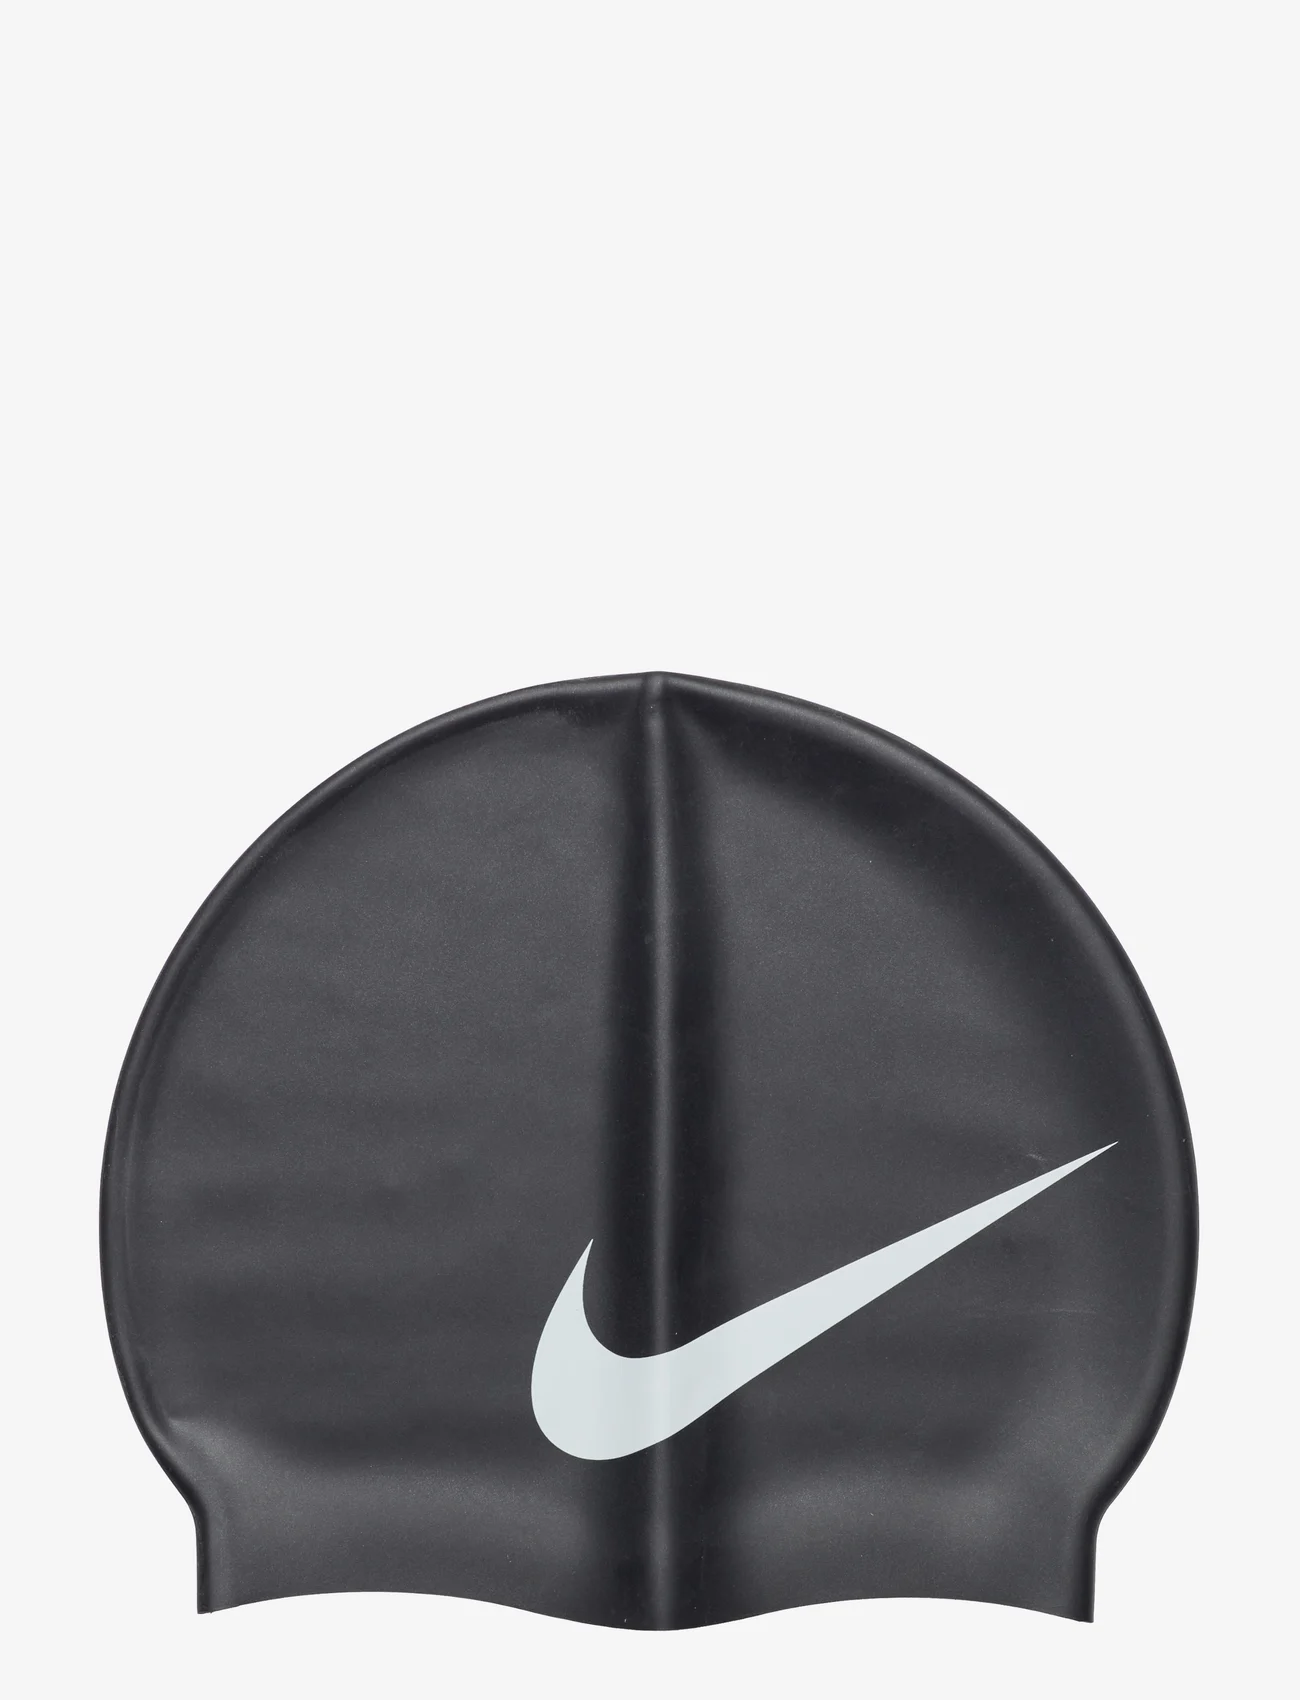 NIKE SWIM - Nike Big Swoosh Cap - mažiausios kainos - black - 0